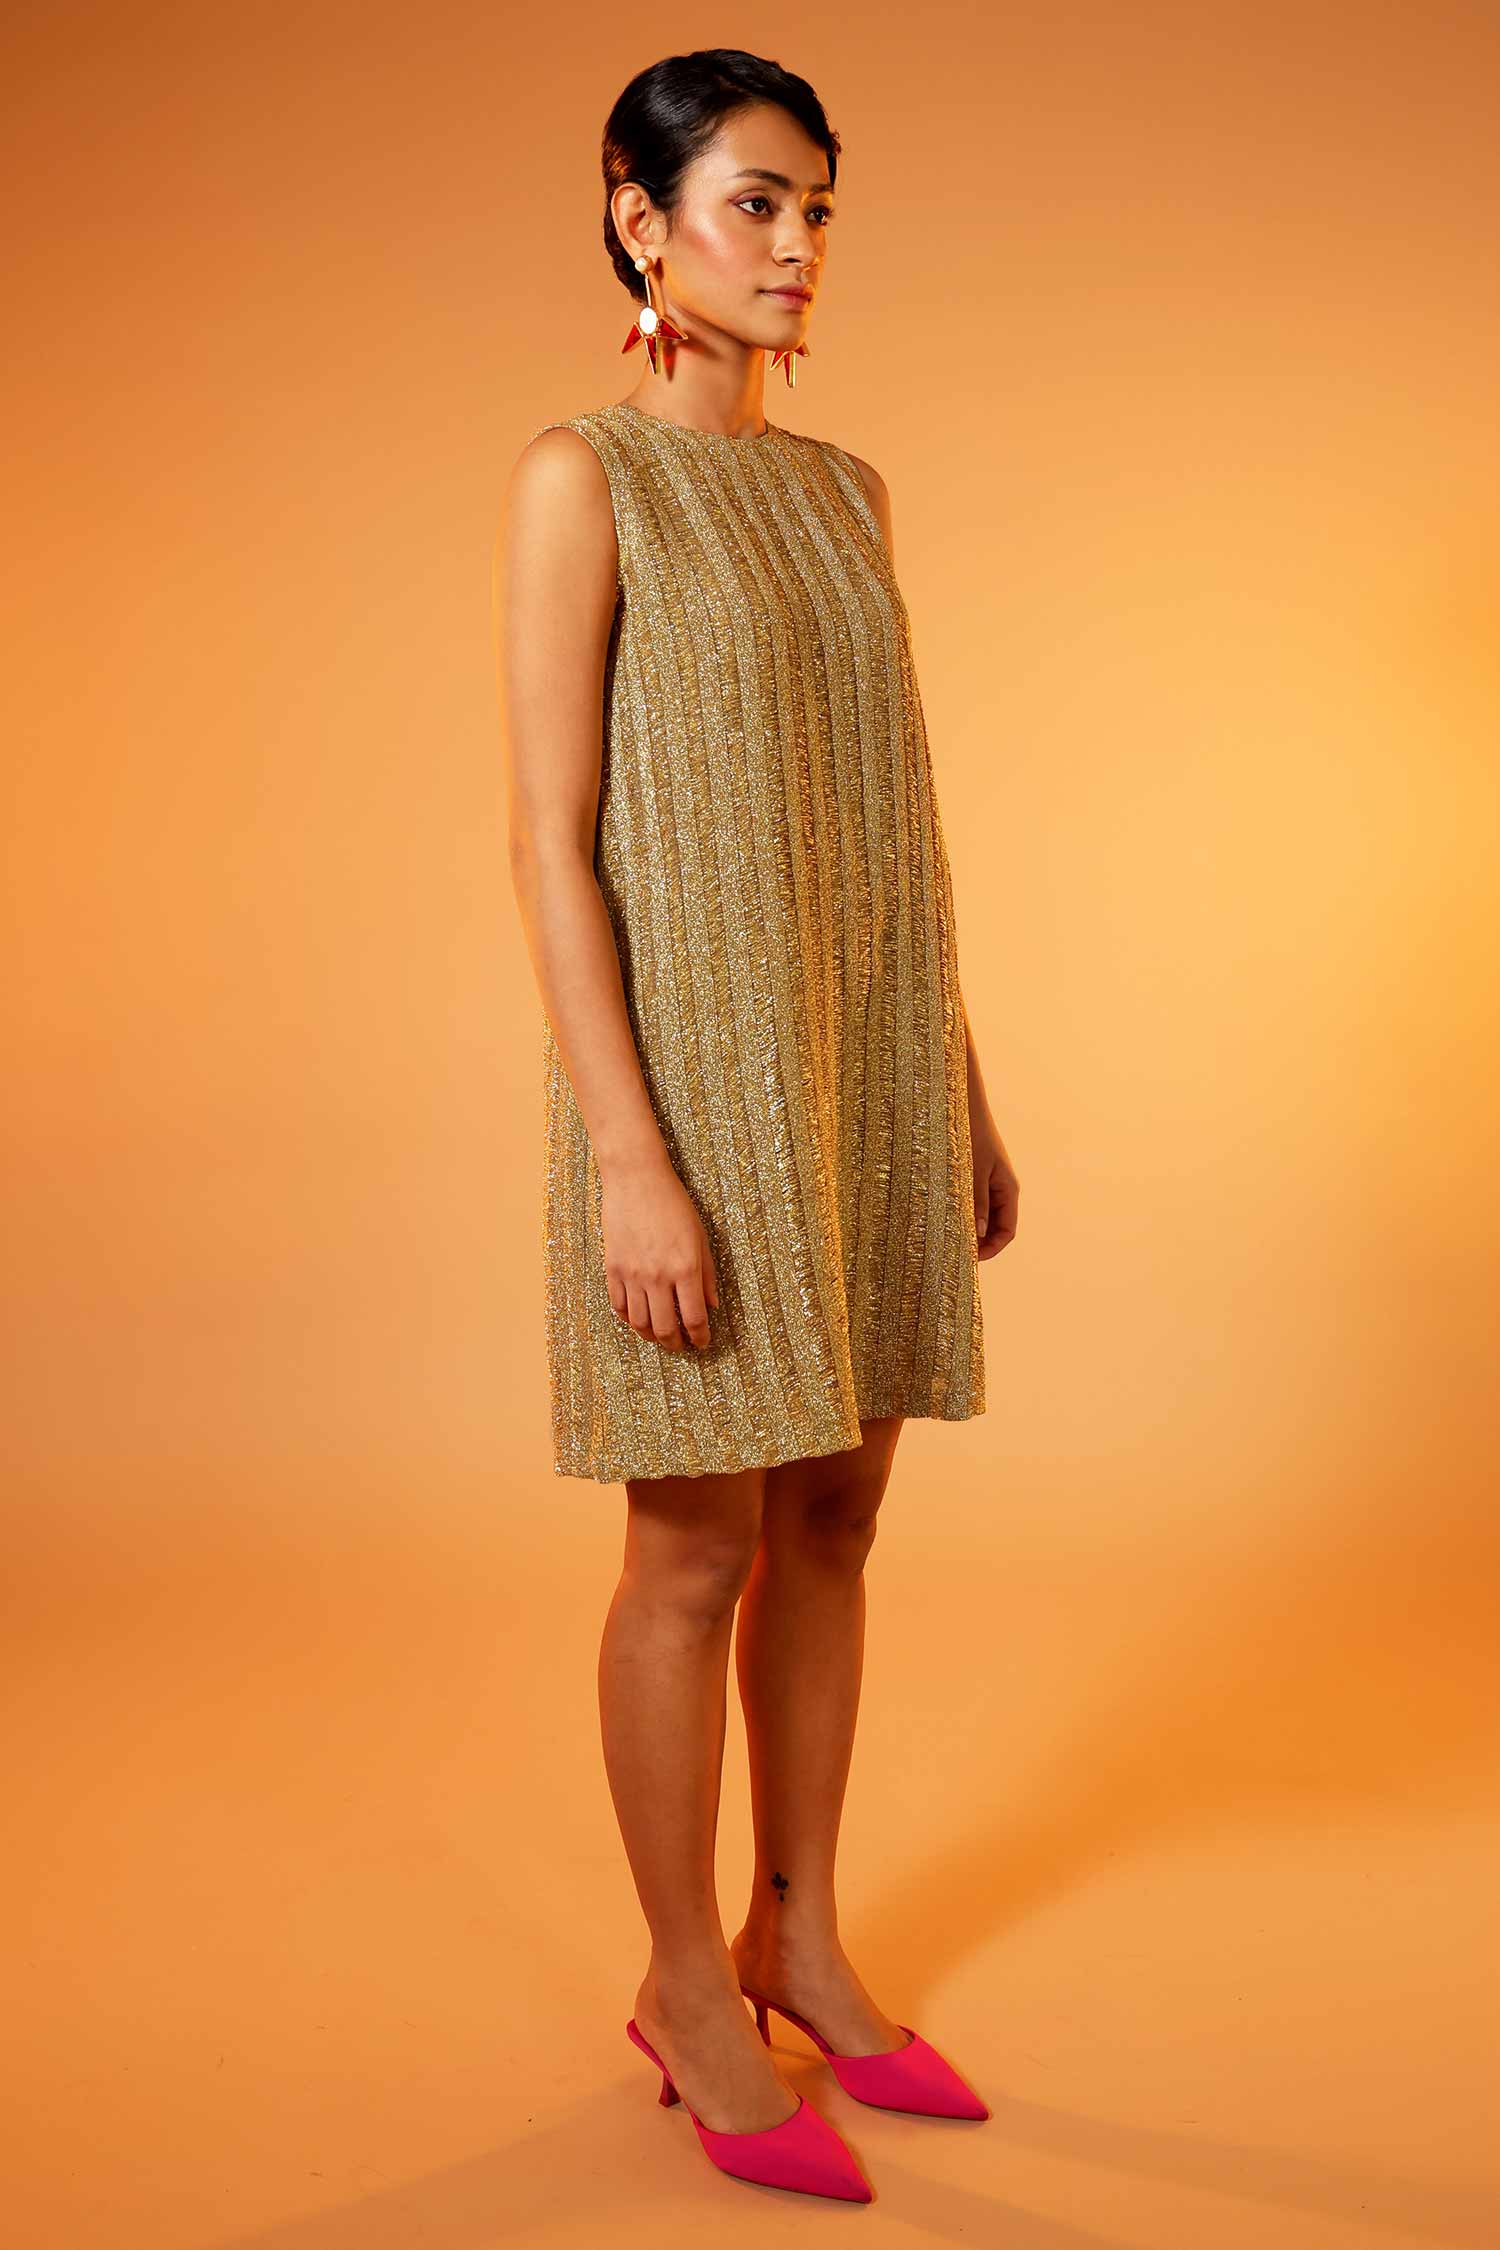 Golden mesh knit dress